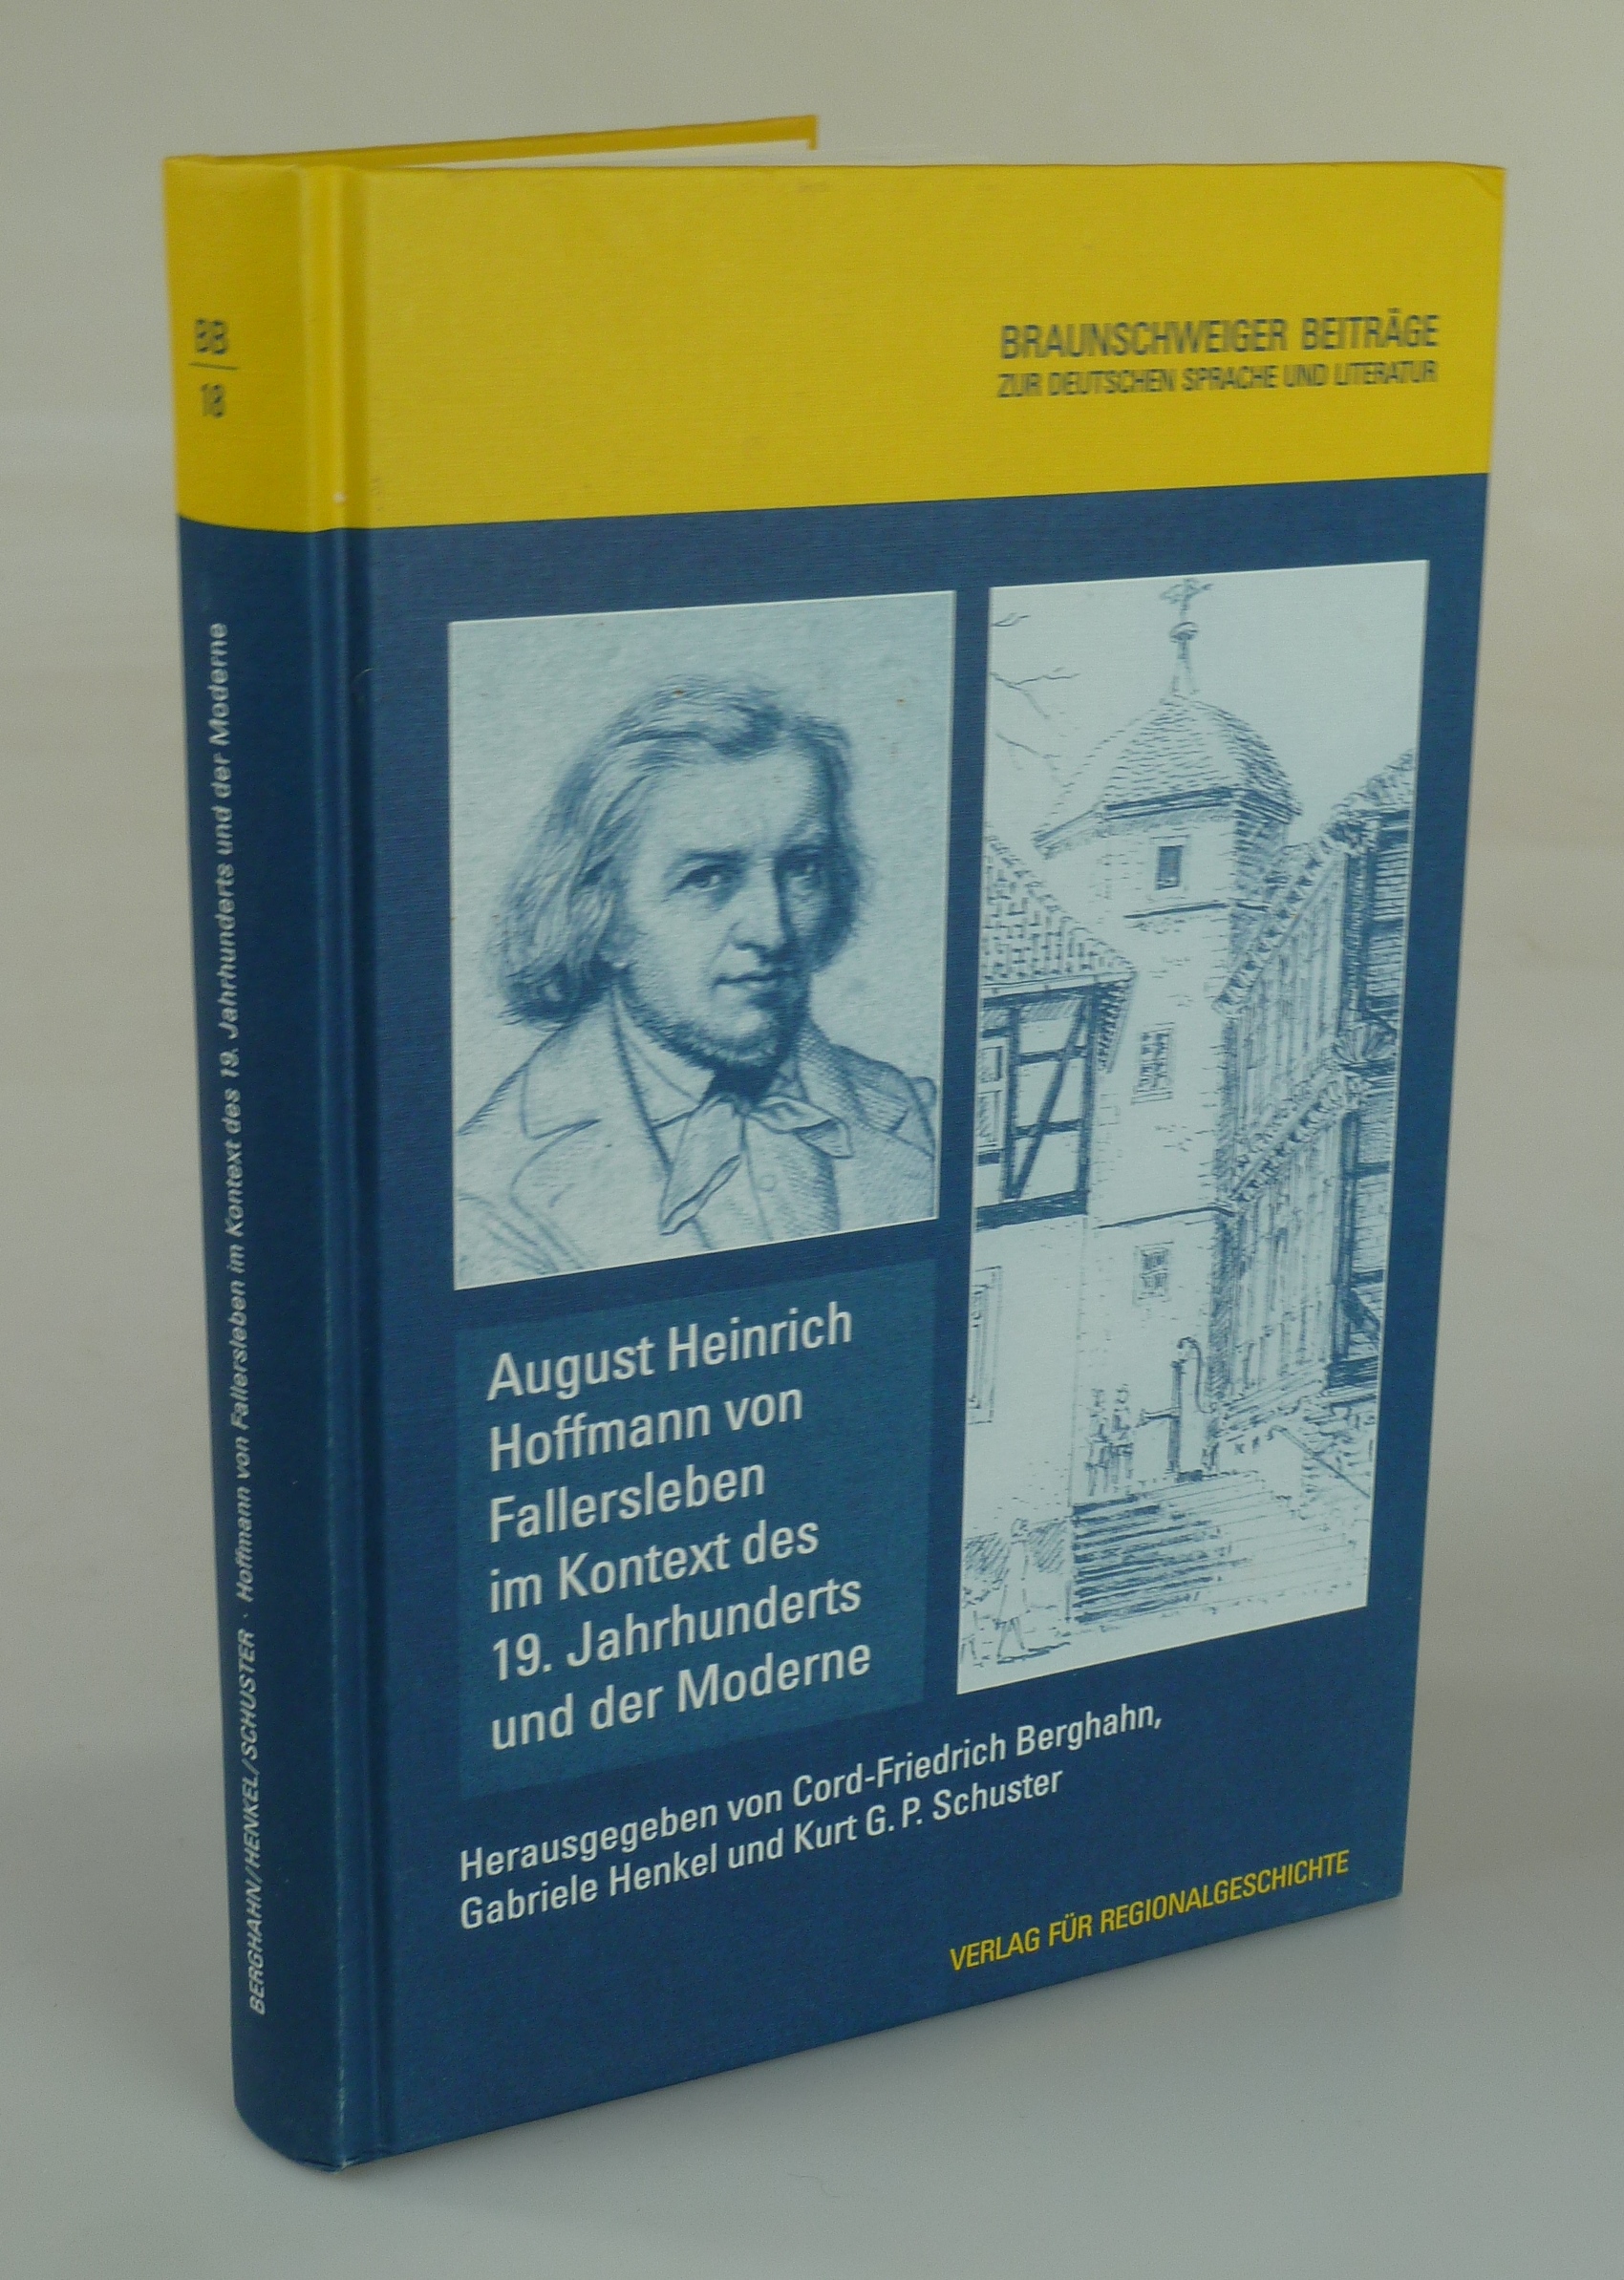 August Heinrich Hoffmann von Fallersleben im Kontext des 19. Jahrhunderts und der Moderne. - BERGHAHN / HENKEL / SCHUSTER (HRSG.).